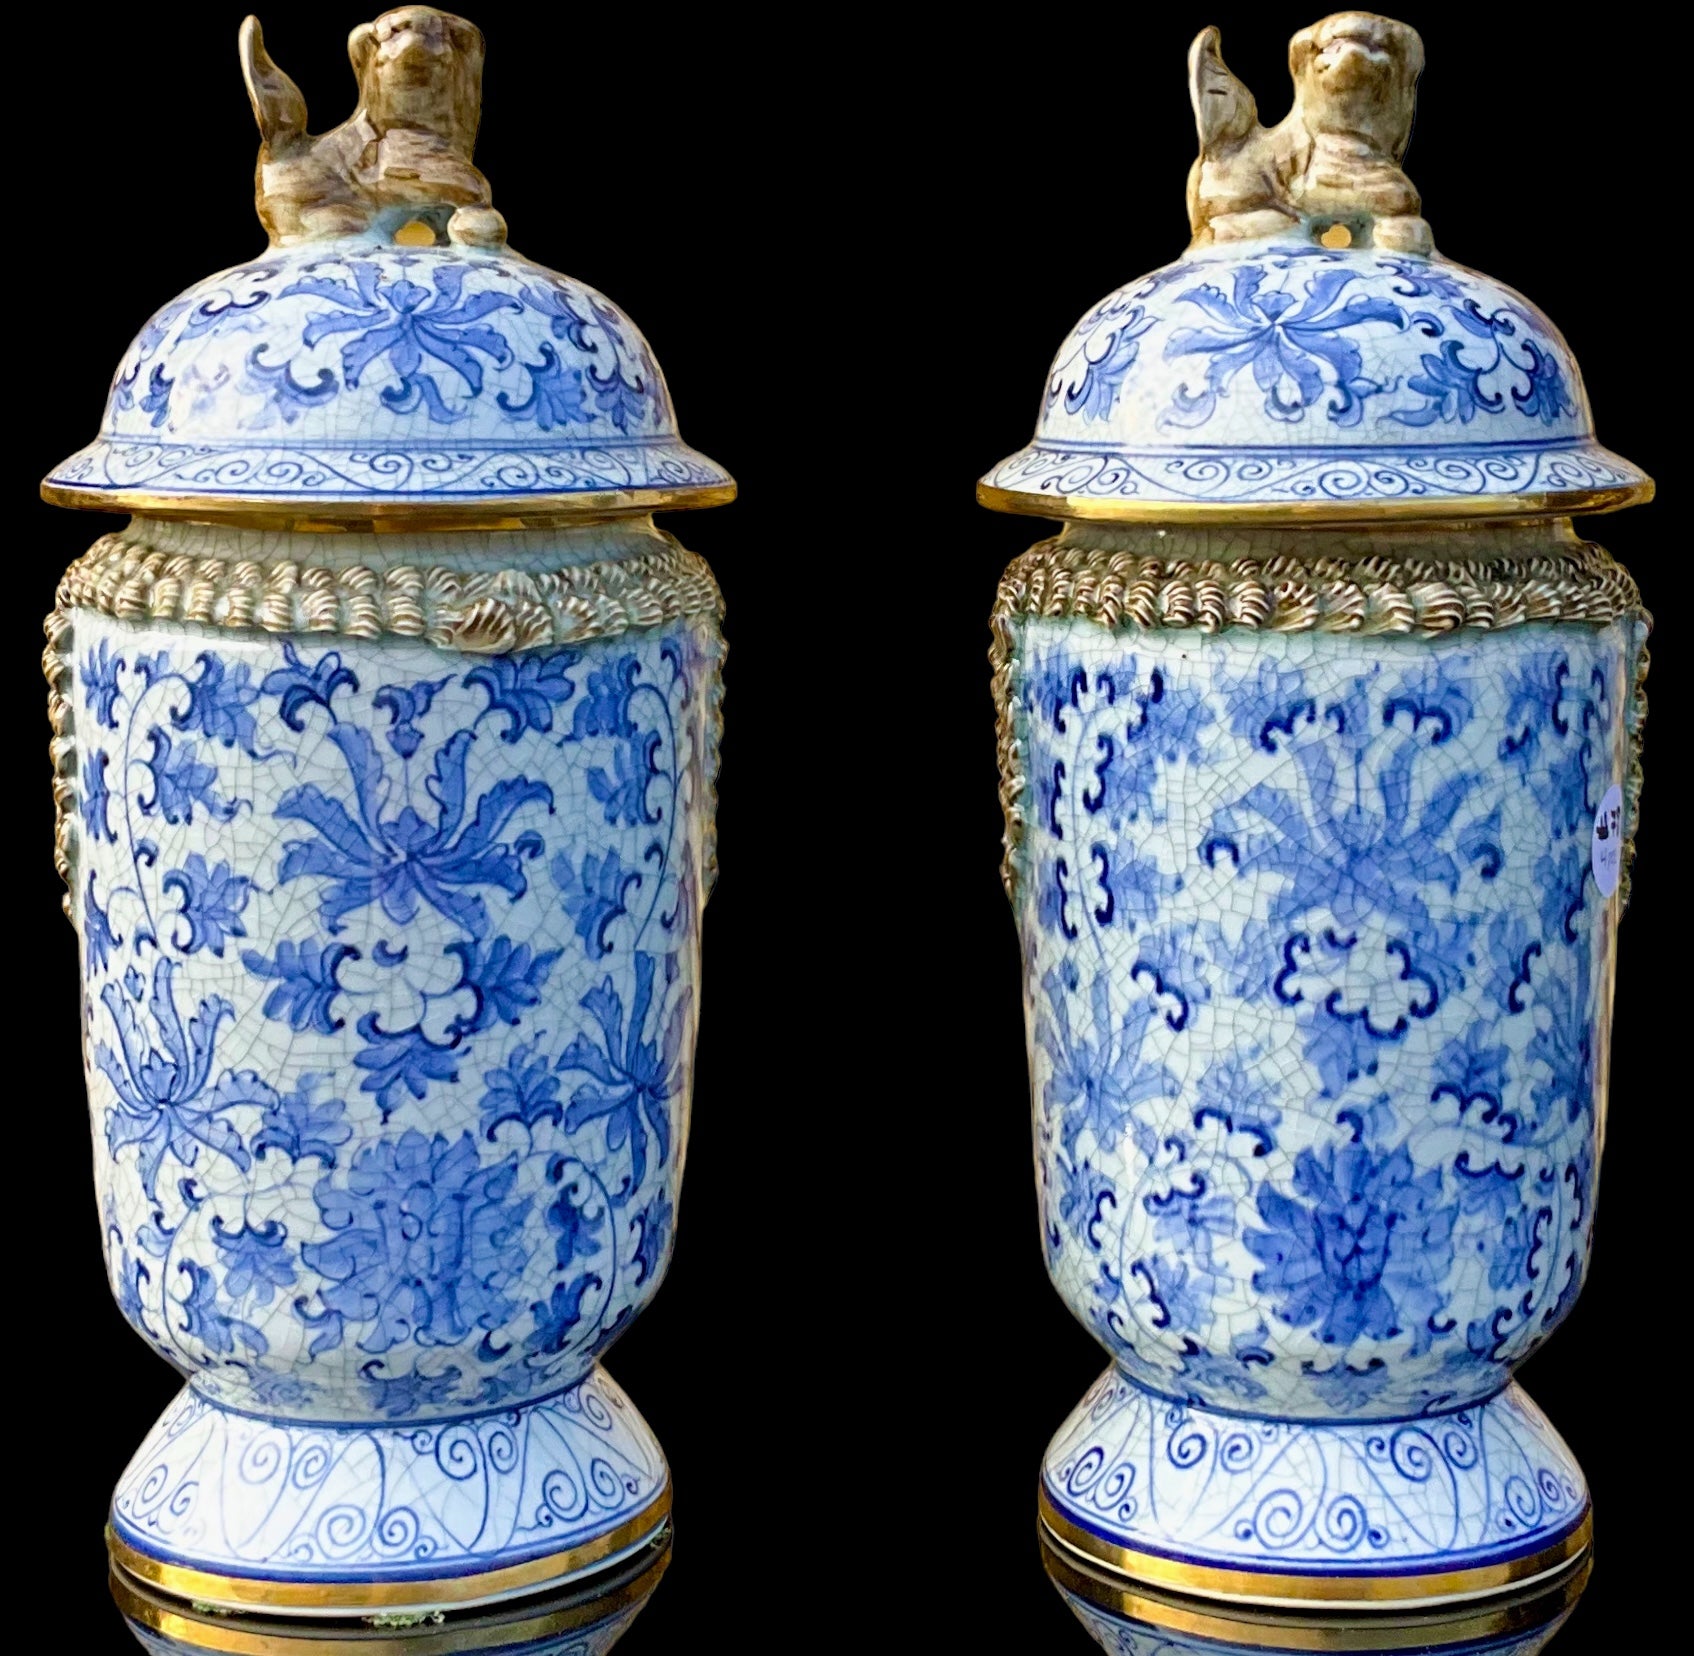 Voici une paire de jolis pots à gingembre en céramique bleue et blanche de style export chinois. Ils ont des accents dorés et des embouts en chien de faïence. La poterie est intentionnellement craquelée. Ils sont marqués.